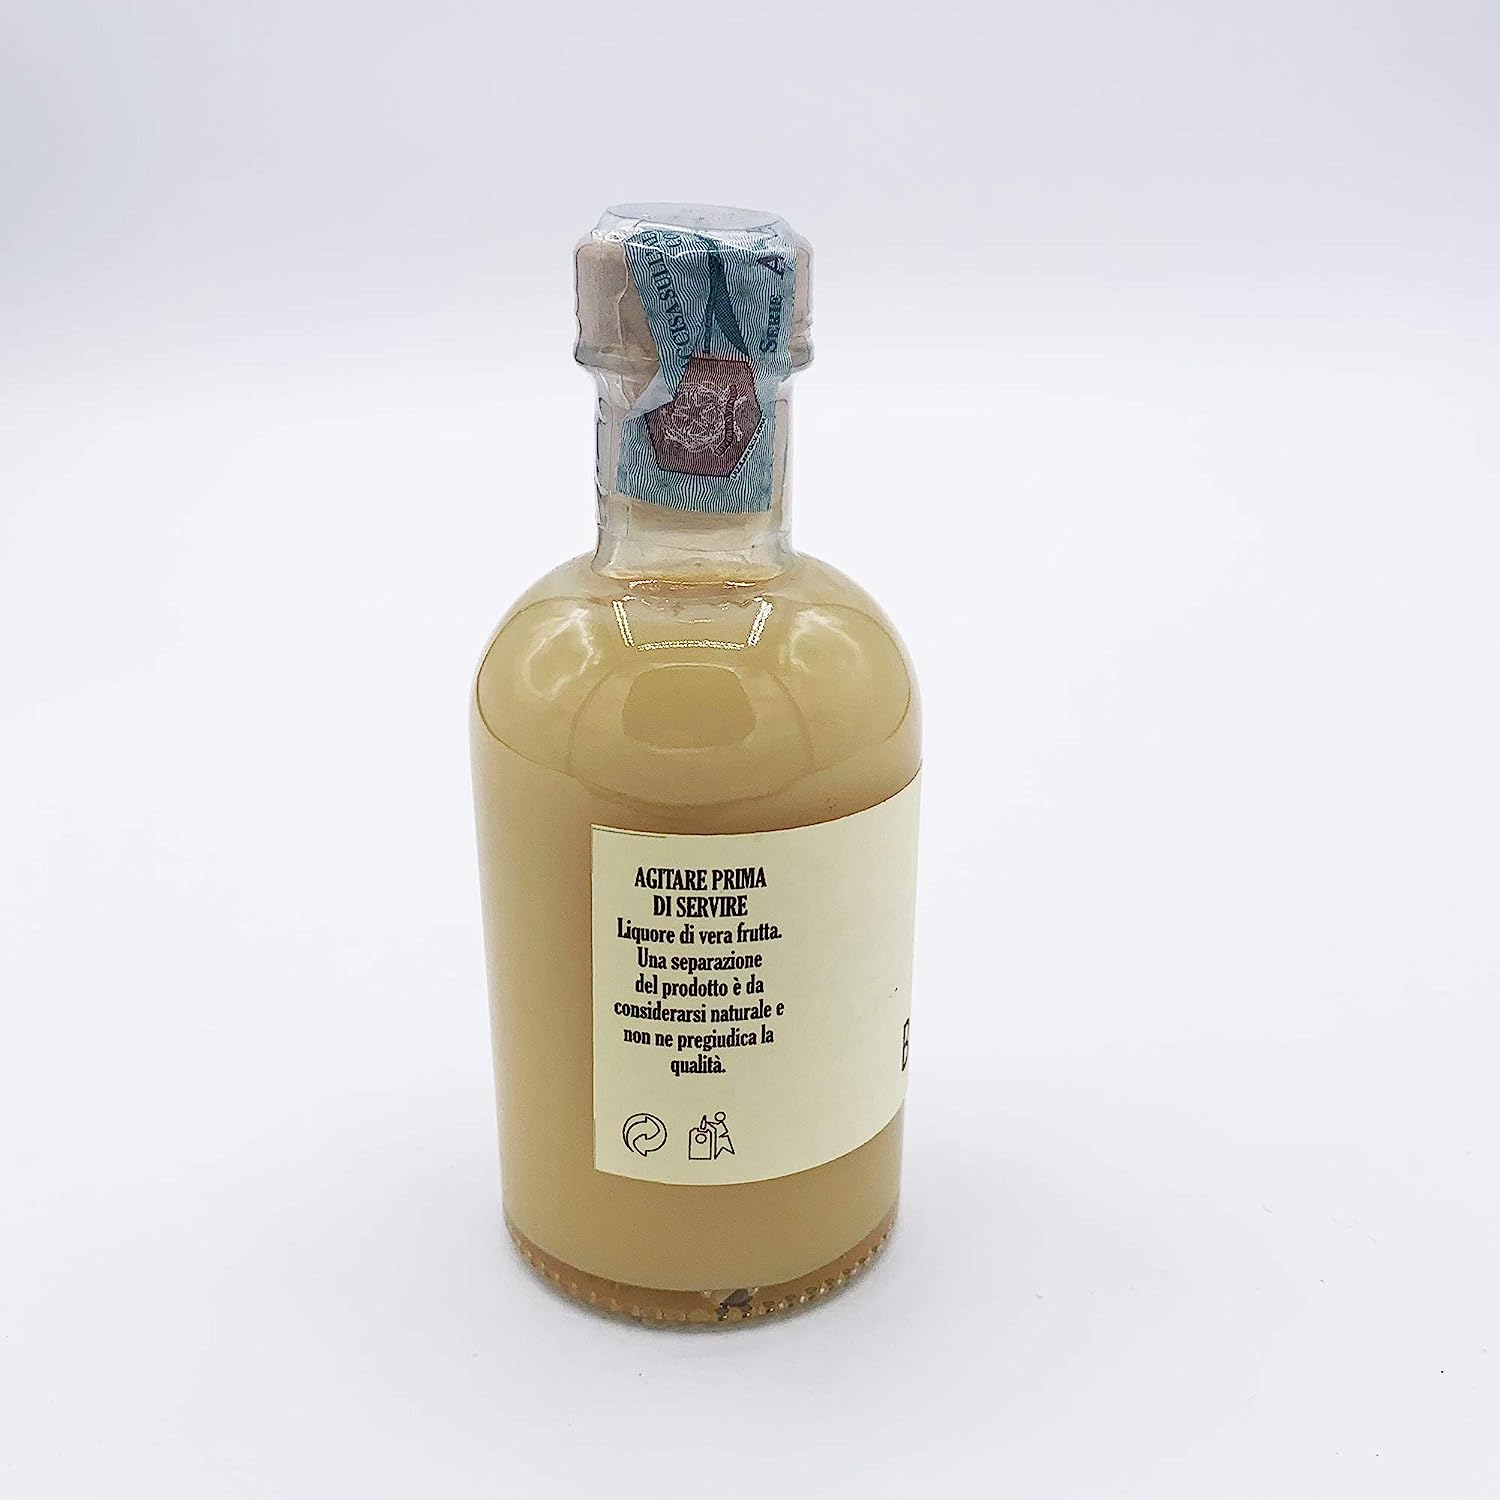 Amarcord Crema alla Banana Liquore di frutta Artigianale prodotto in Romagna